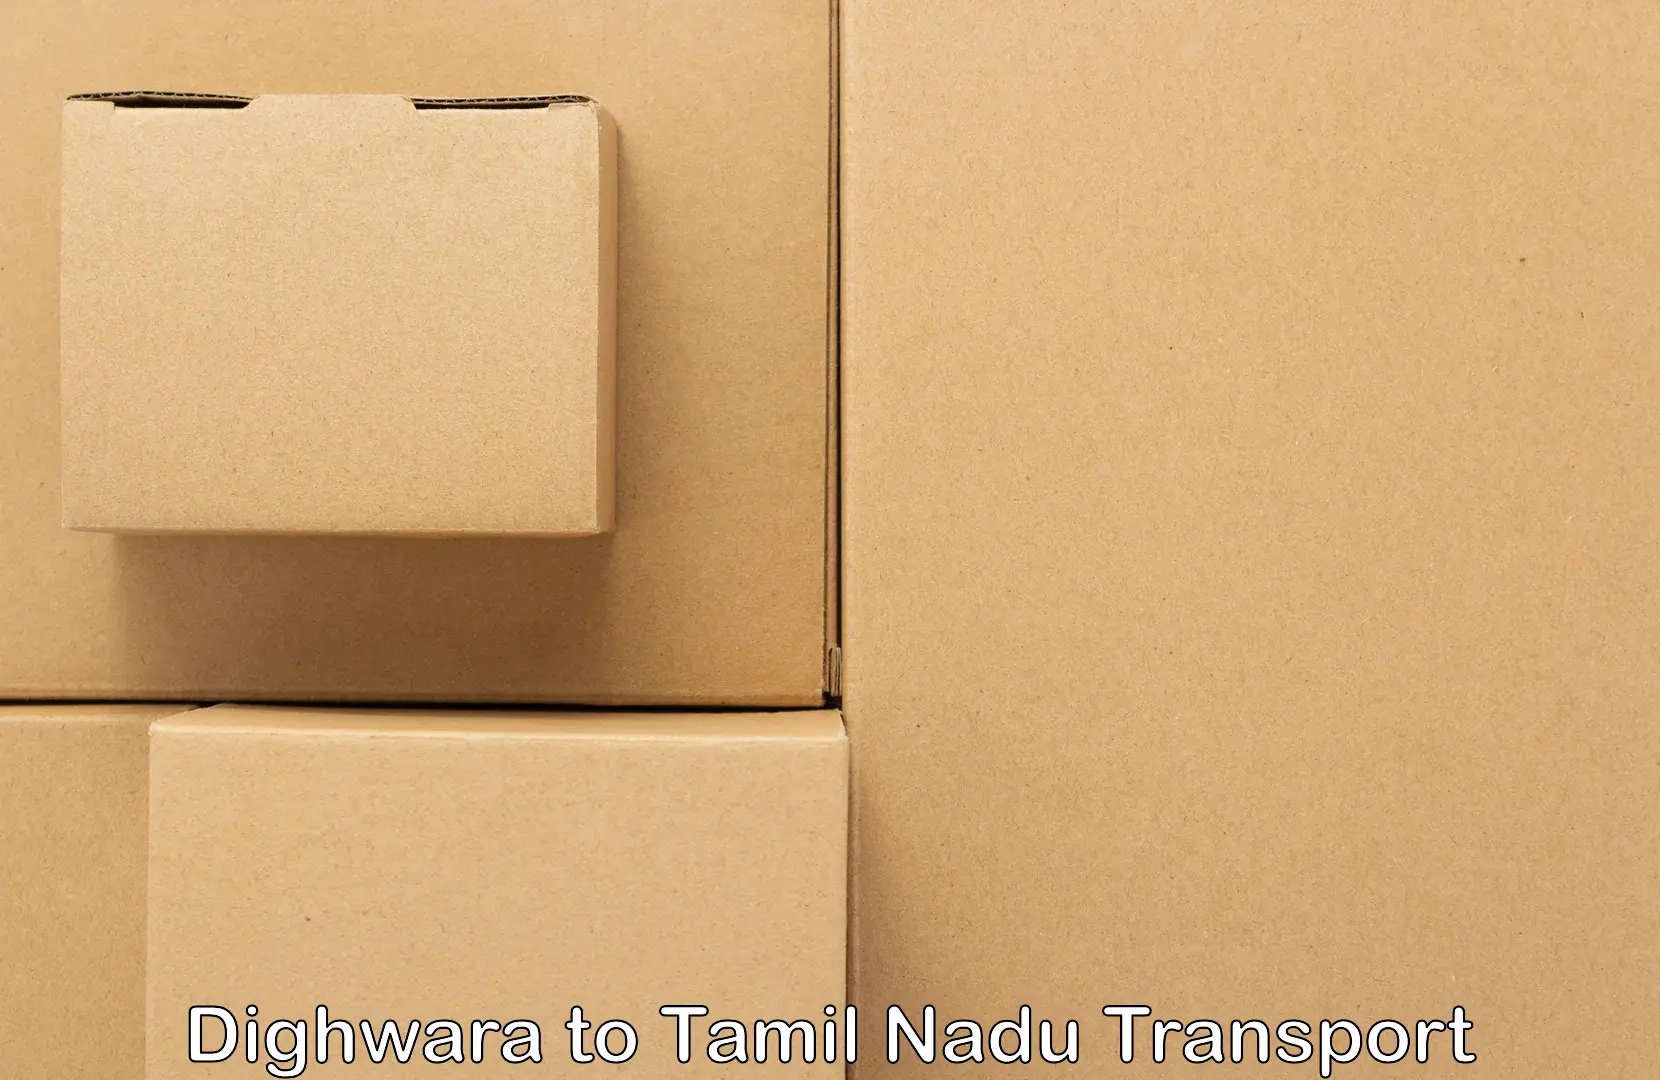 Two wheeler parcel service Dighwara to IIIT Tiruchirappalli